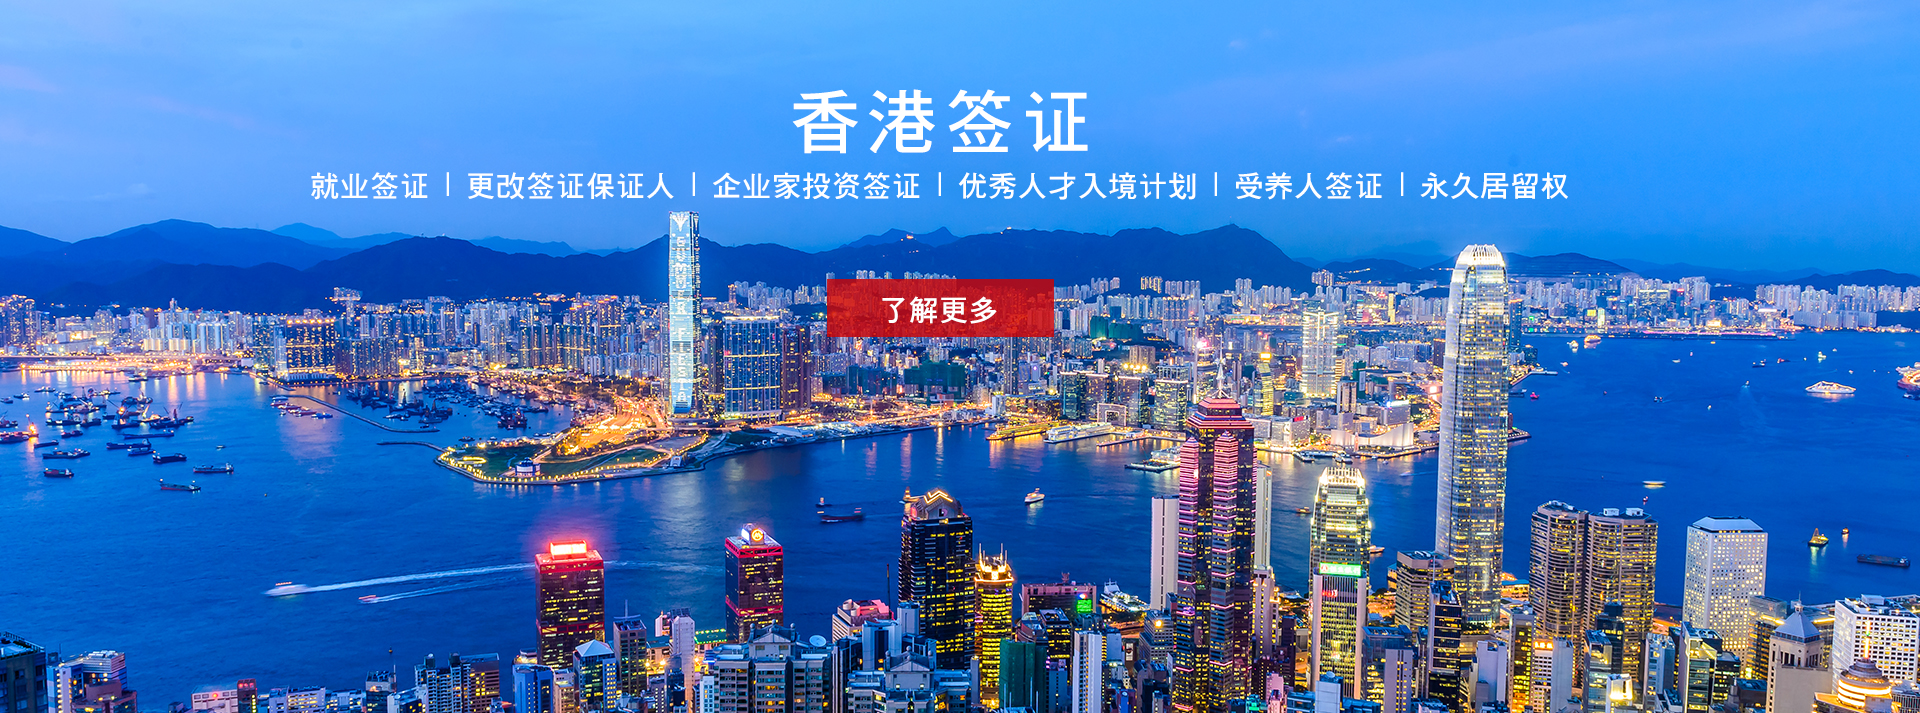 香港签证服务及香港移民服务